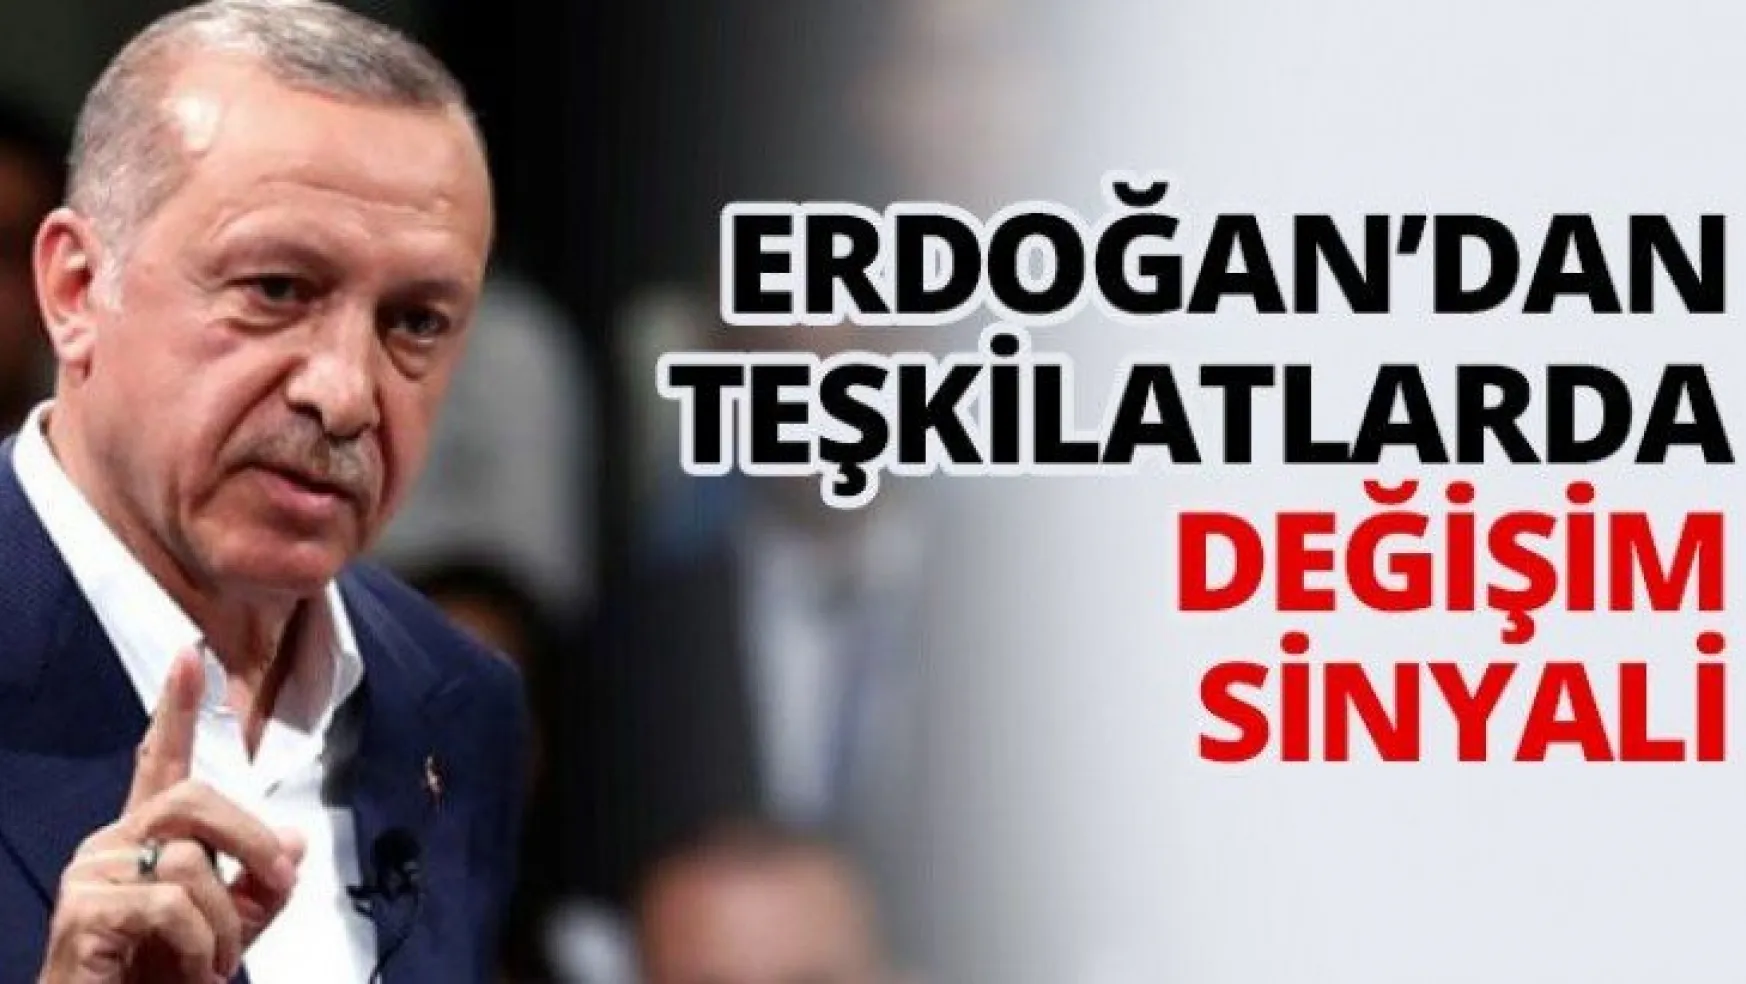 Erdoğan'dan teşkilatlarda değişim sinyali